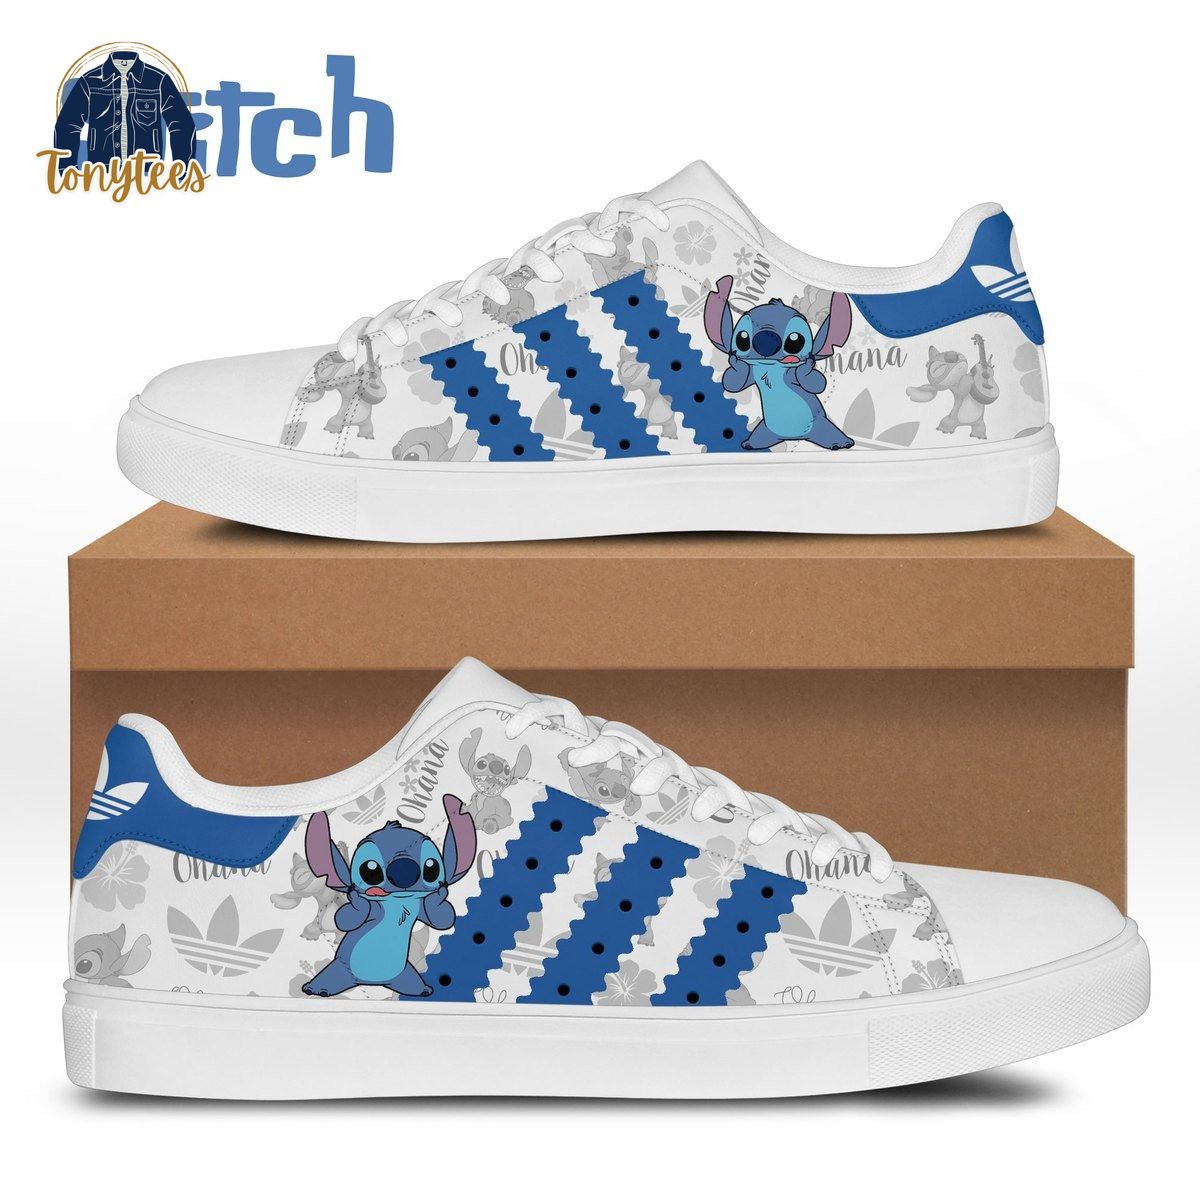 Stitch Ohana adidas stan smith shoes